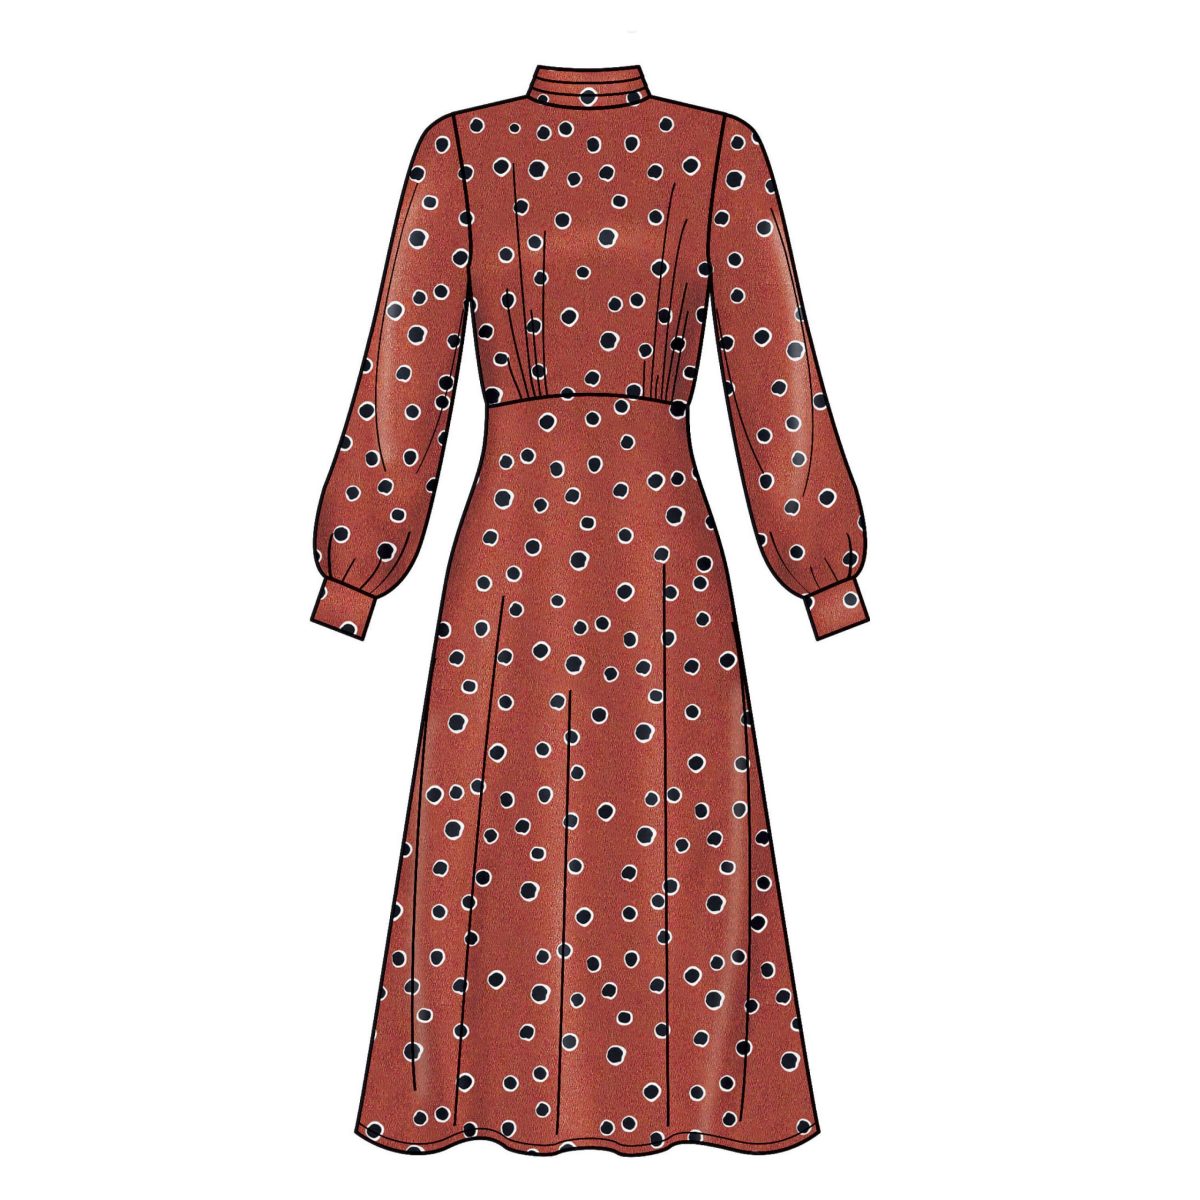 New Look Sewing Pattern N6682 Misses' Dress